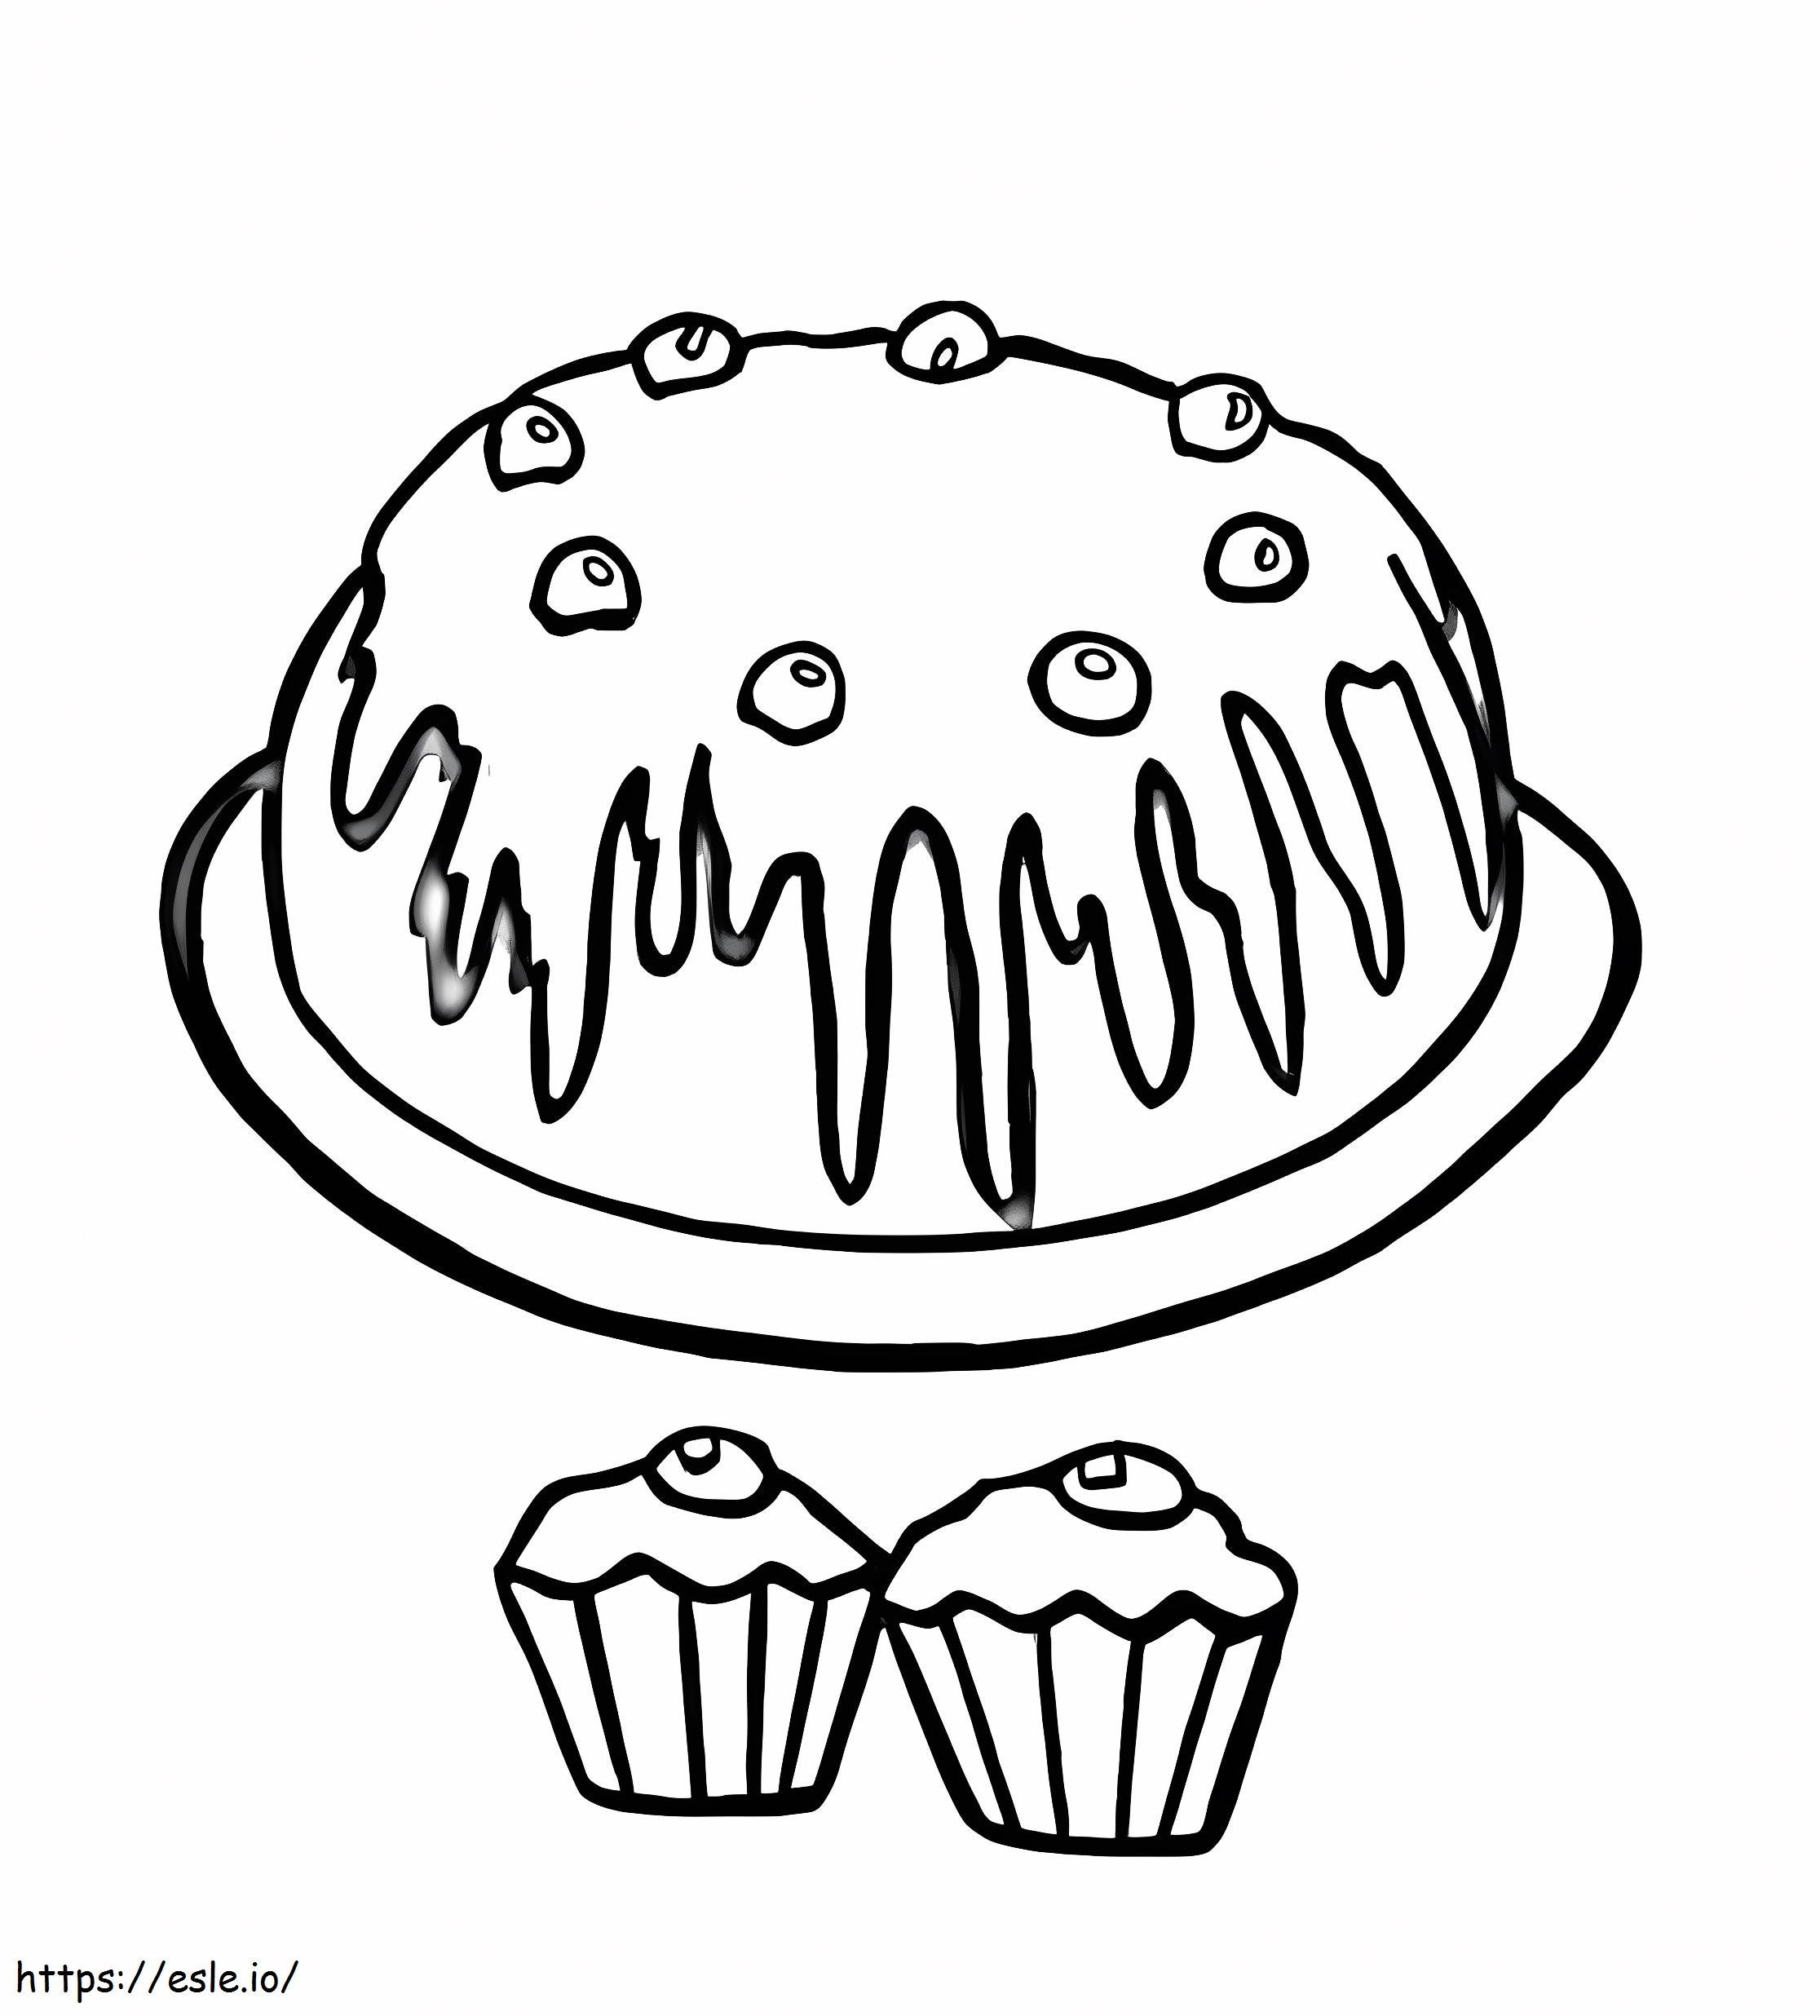 Coloriage Gâteau d'anniversaire et deux cupcakes à imprimer dessin